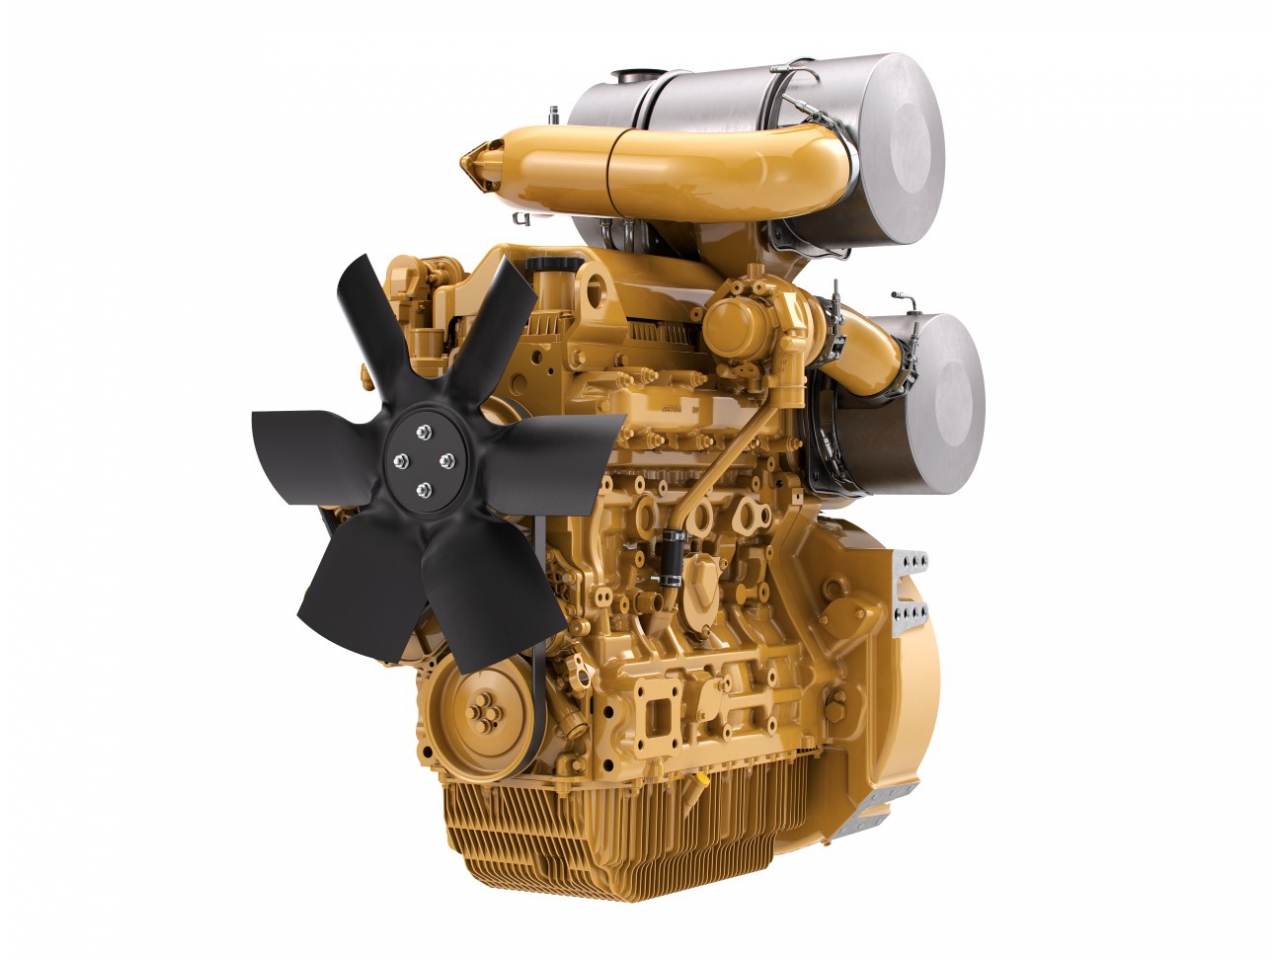 Priemyslený motor Cat C3.6 - 55-100 kW